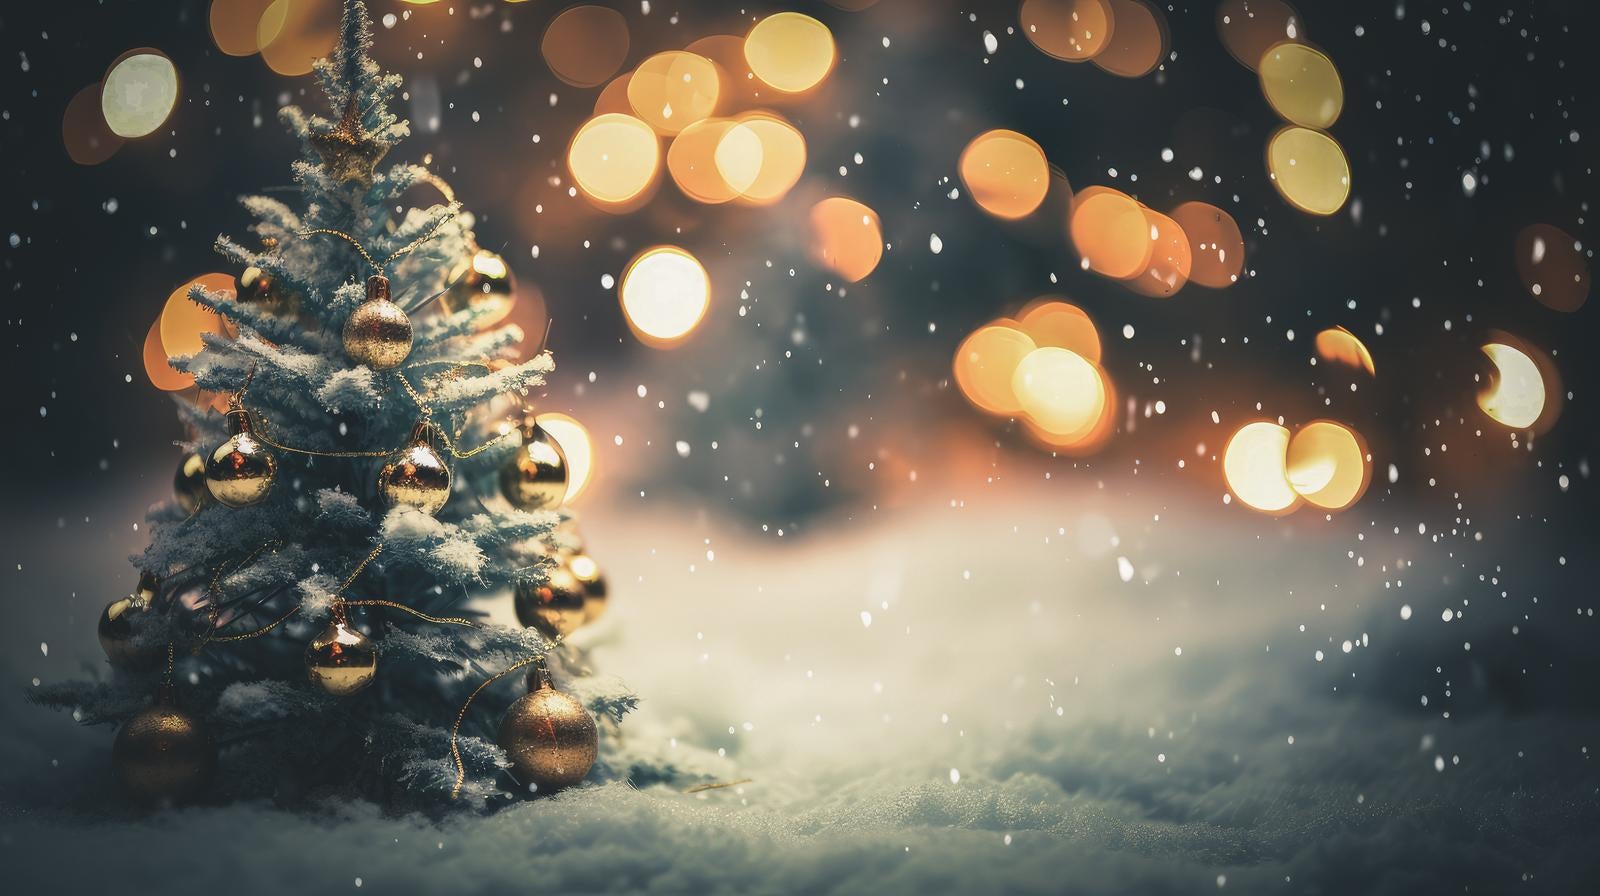 ホワイトクリスマスとライトアップの街の無料AI画像素材 - ID.88558 ...